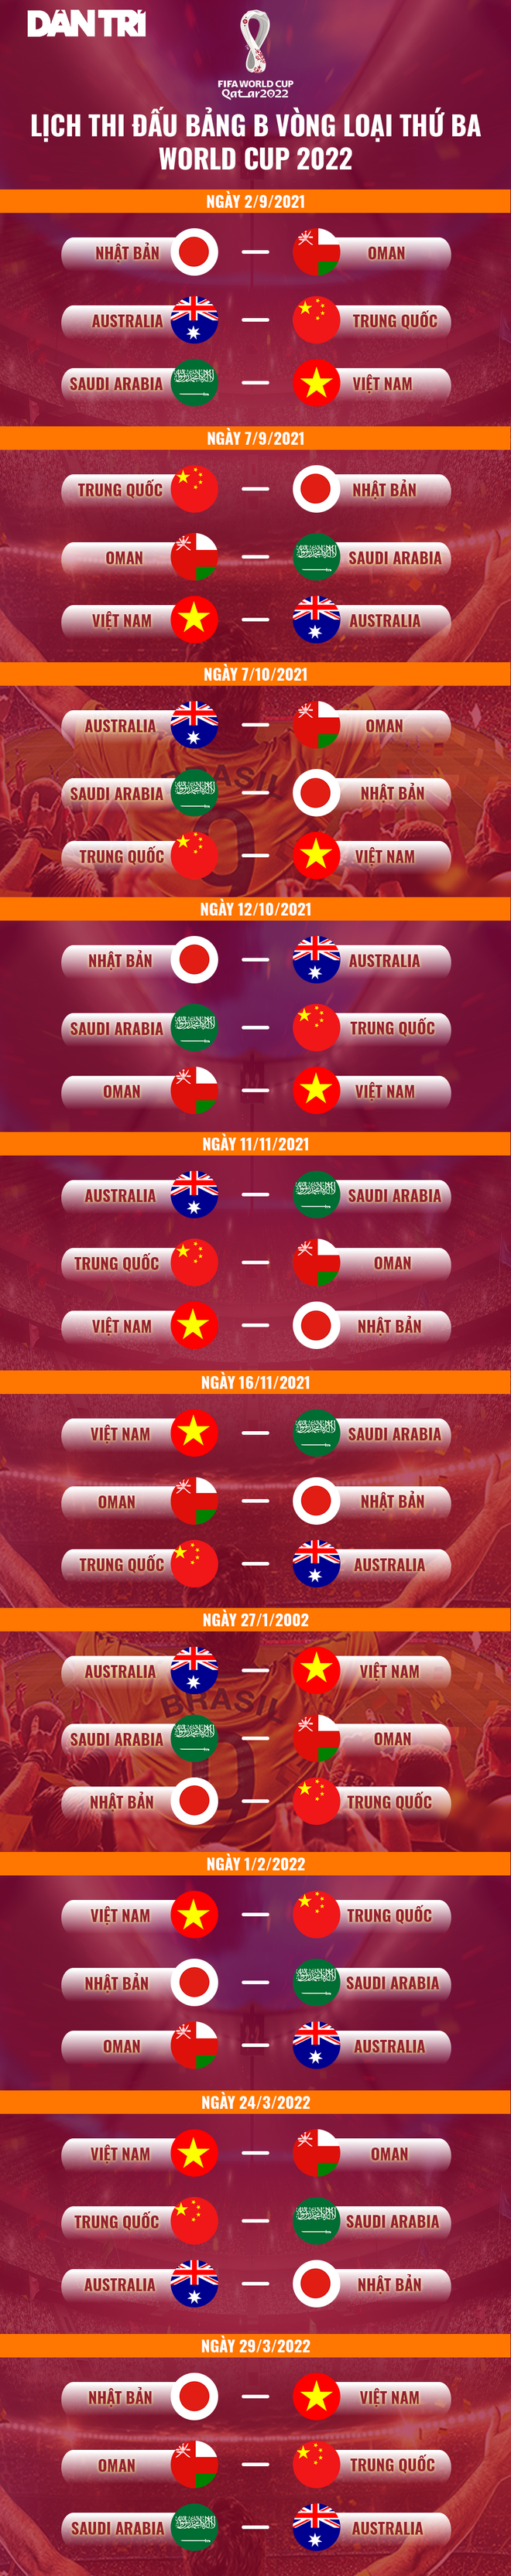 Đội tuyển Việt Nam tập trung một tuần trước vòng loại World Cup - 3